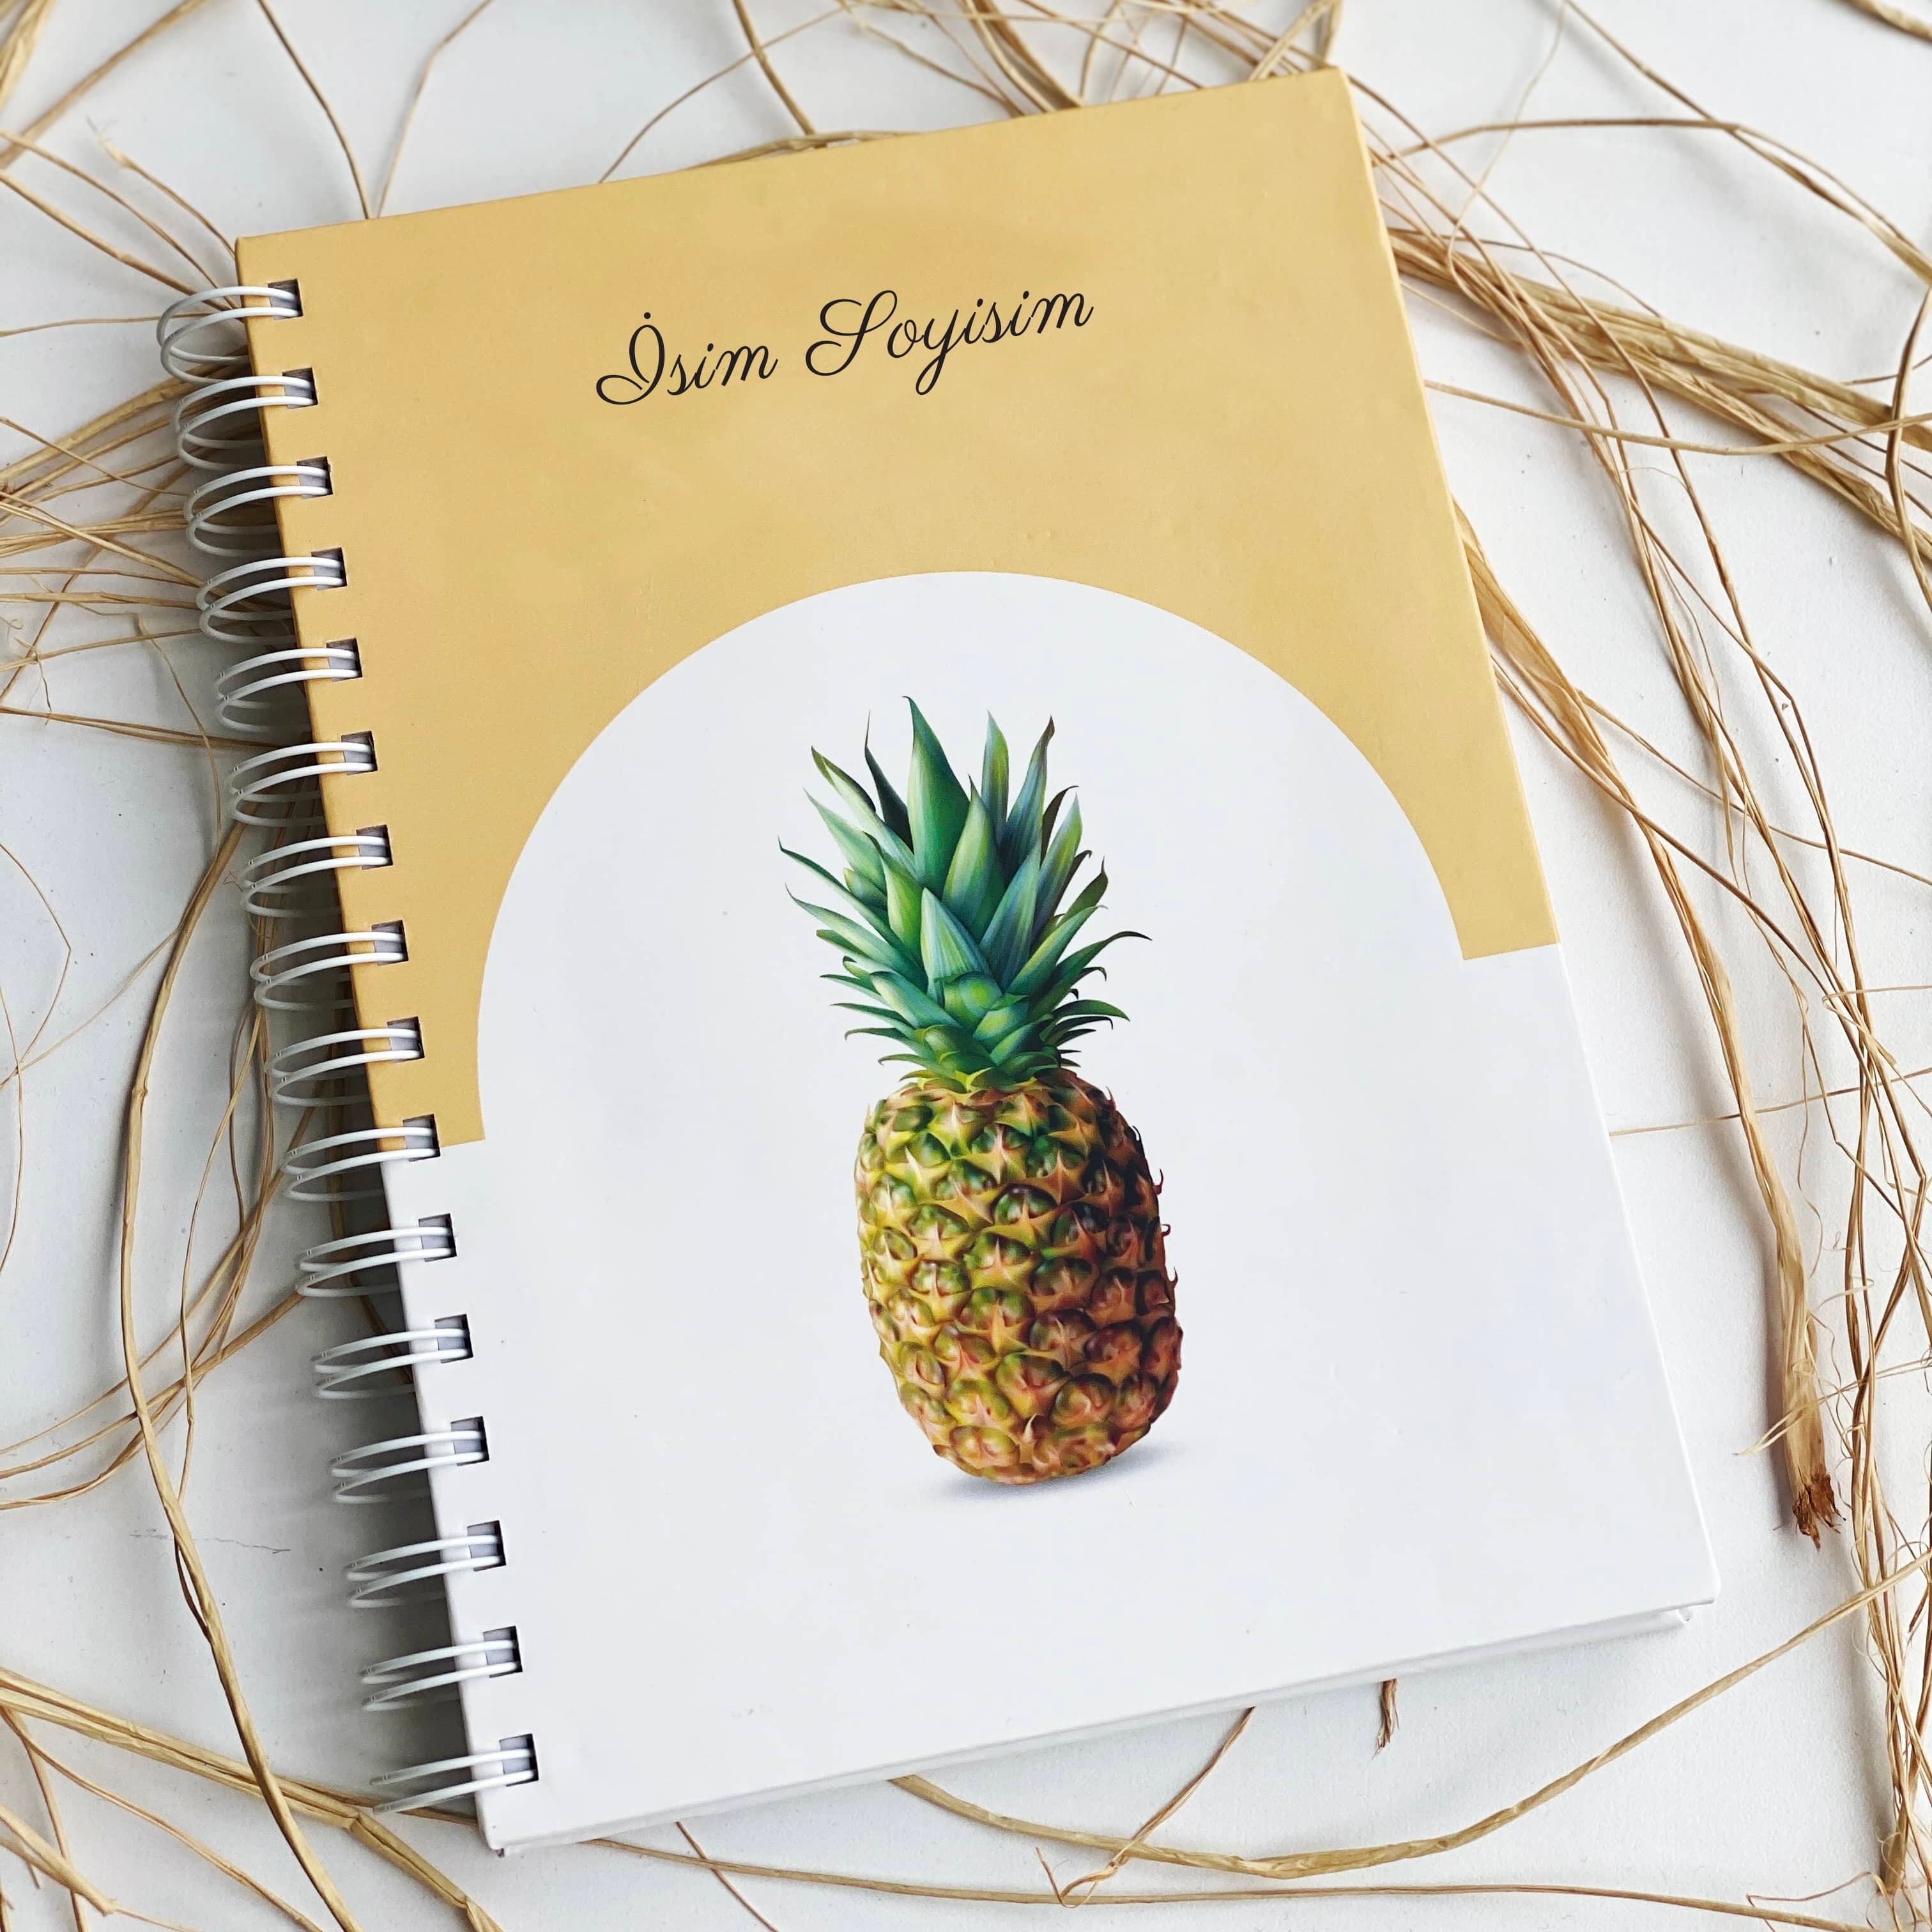 İsminize Özel Tasarım Planlayıcı - Ananas